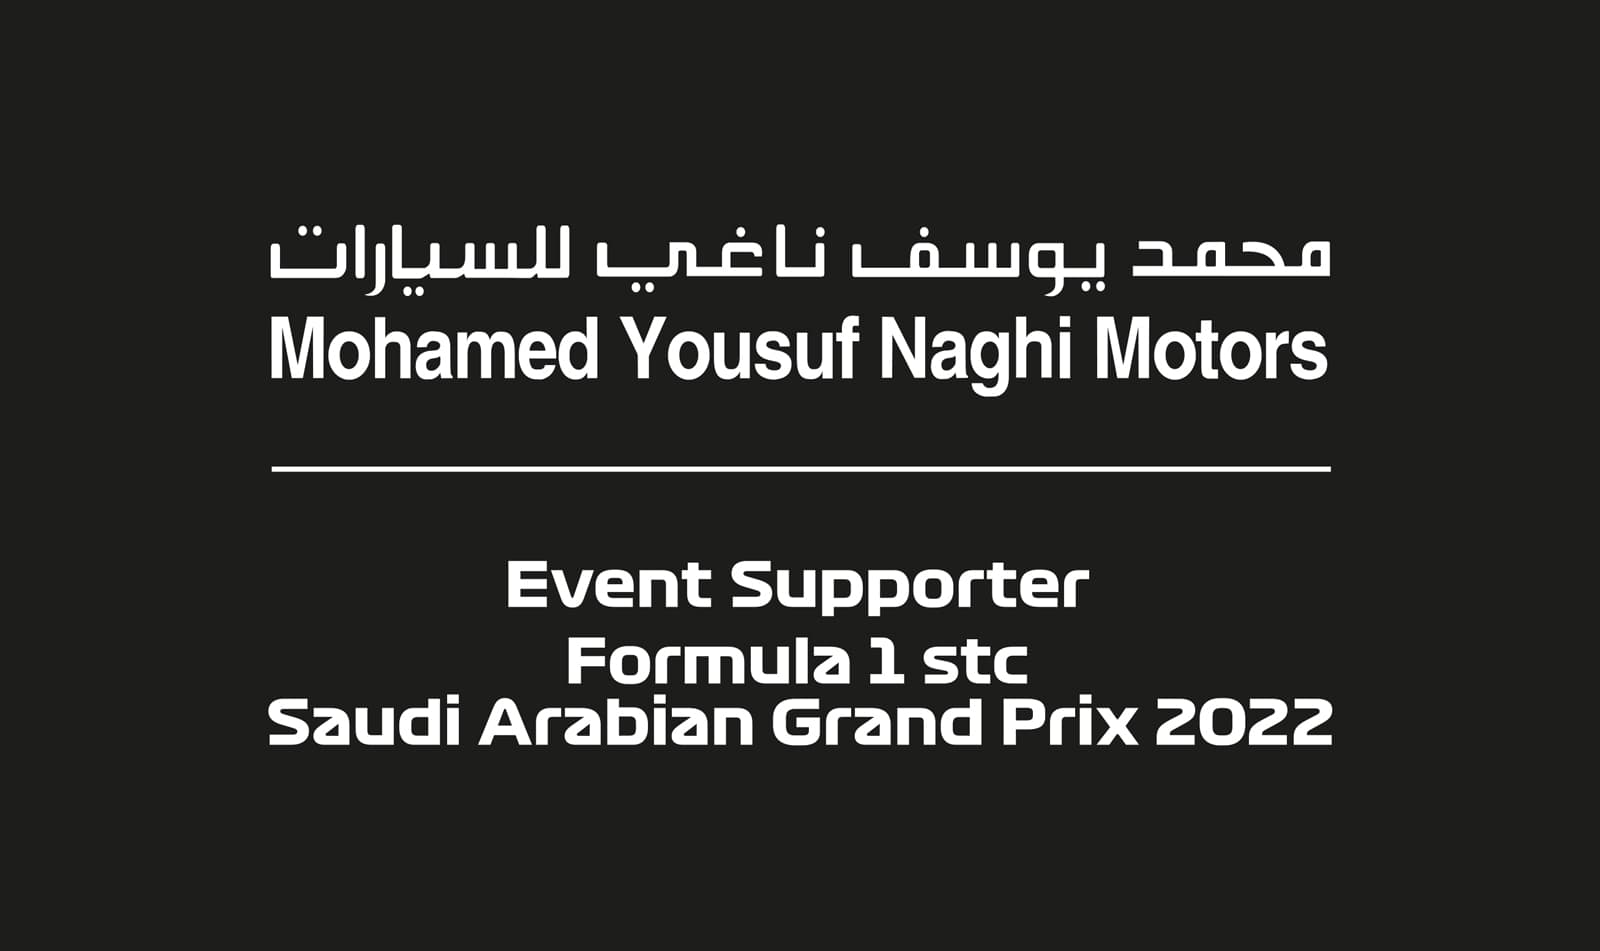 بعد النجاح والتميز في رعاية النسخة الأولىمحمد يوسف ناغي راعياً رسمياً لسباق جائزة السعودية الكبرى stc للفورمولا 1 للمرة الثانية